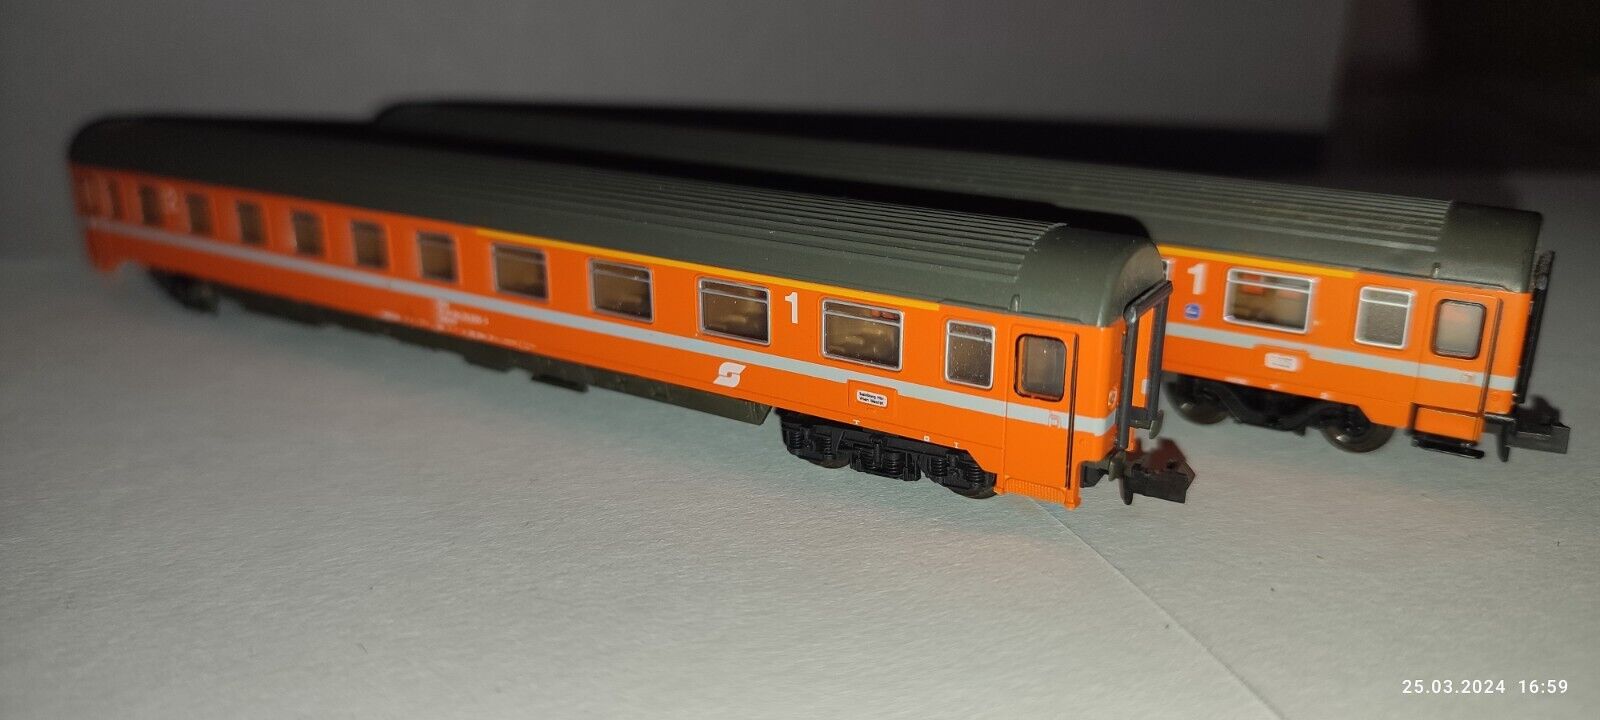 2 x Roco Personenwagen Eurofirma-Schnellzugwagen ÖBB, orange guter Zustand